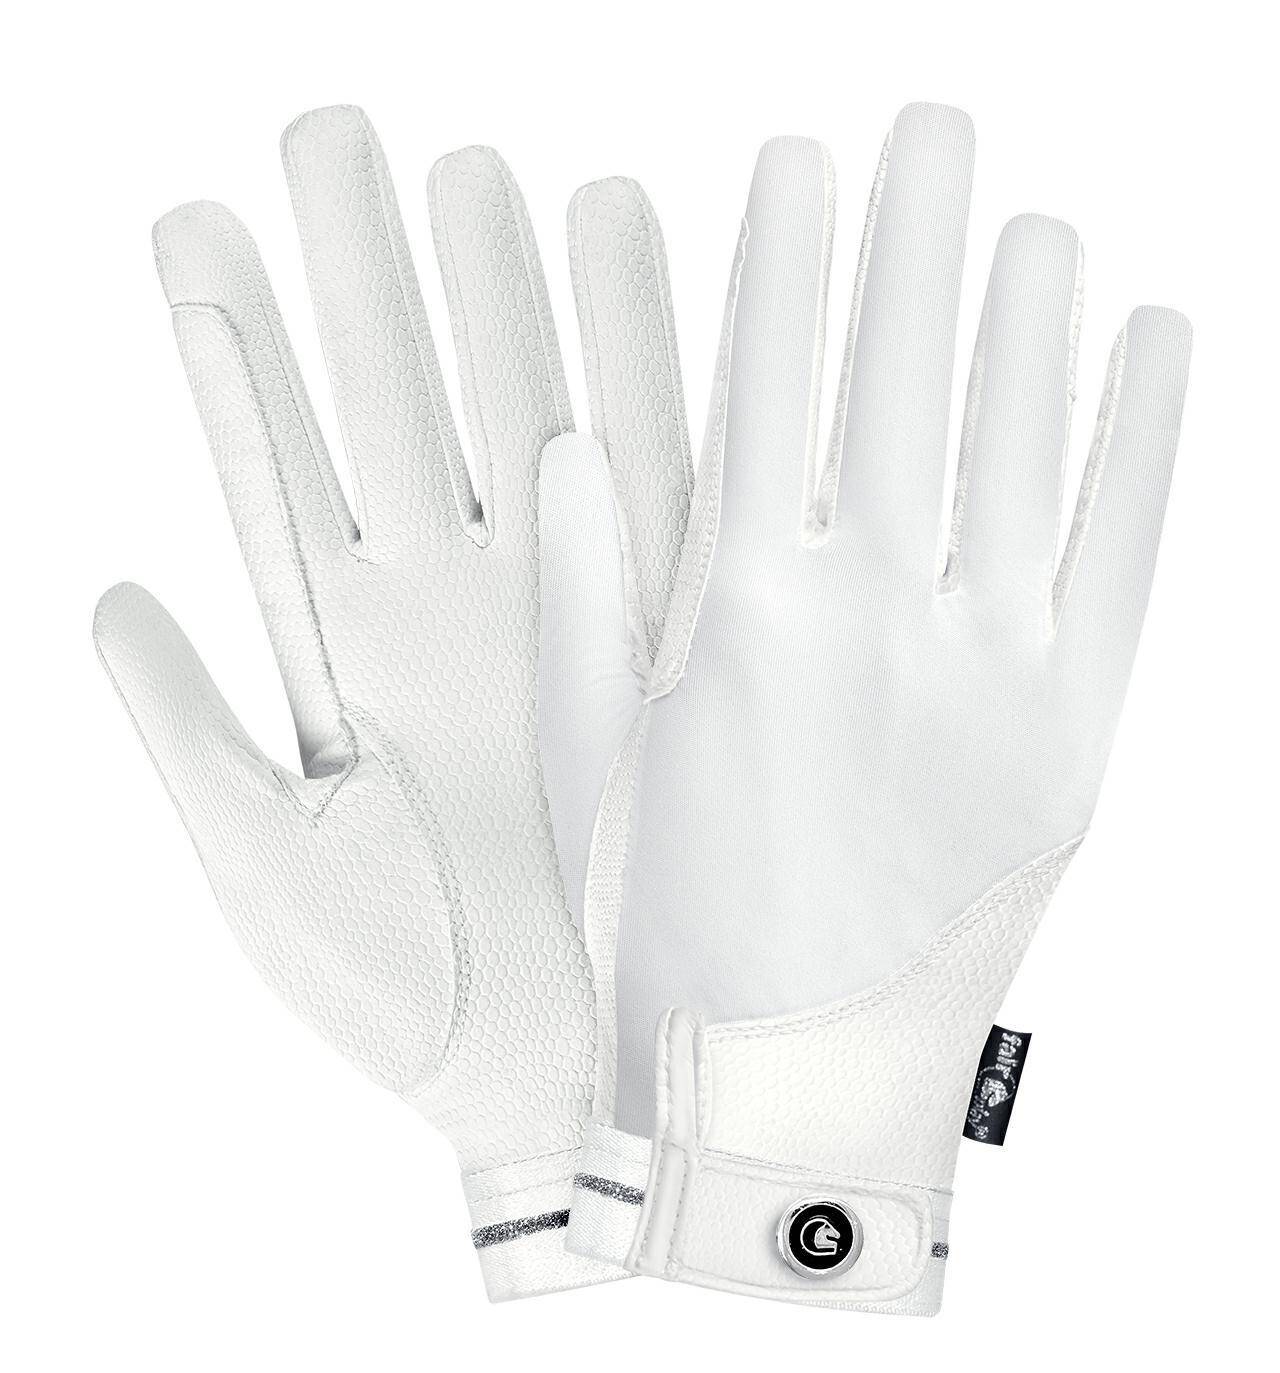 Rękawiczki FP REVEL biały  XL